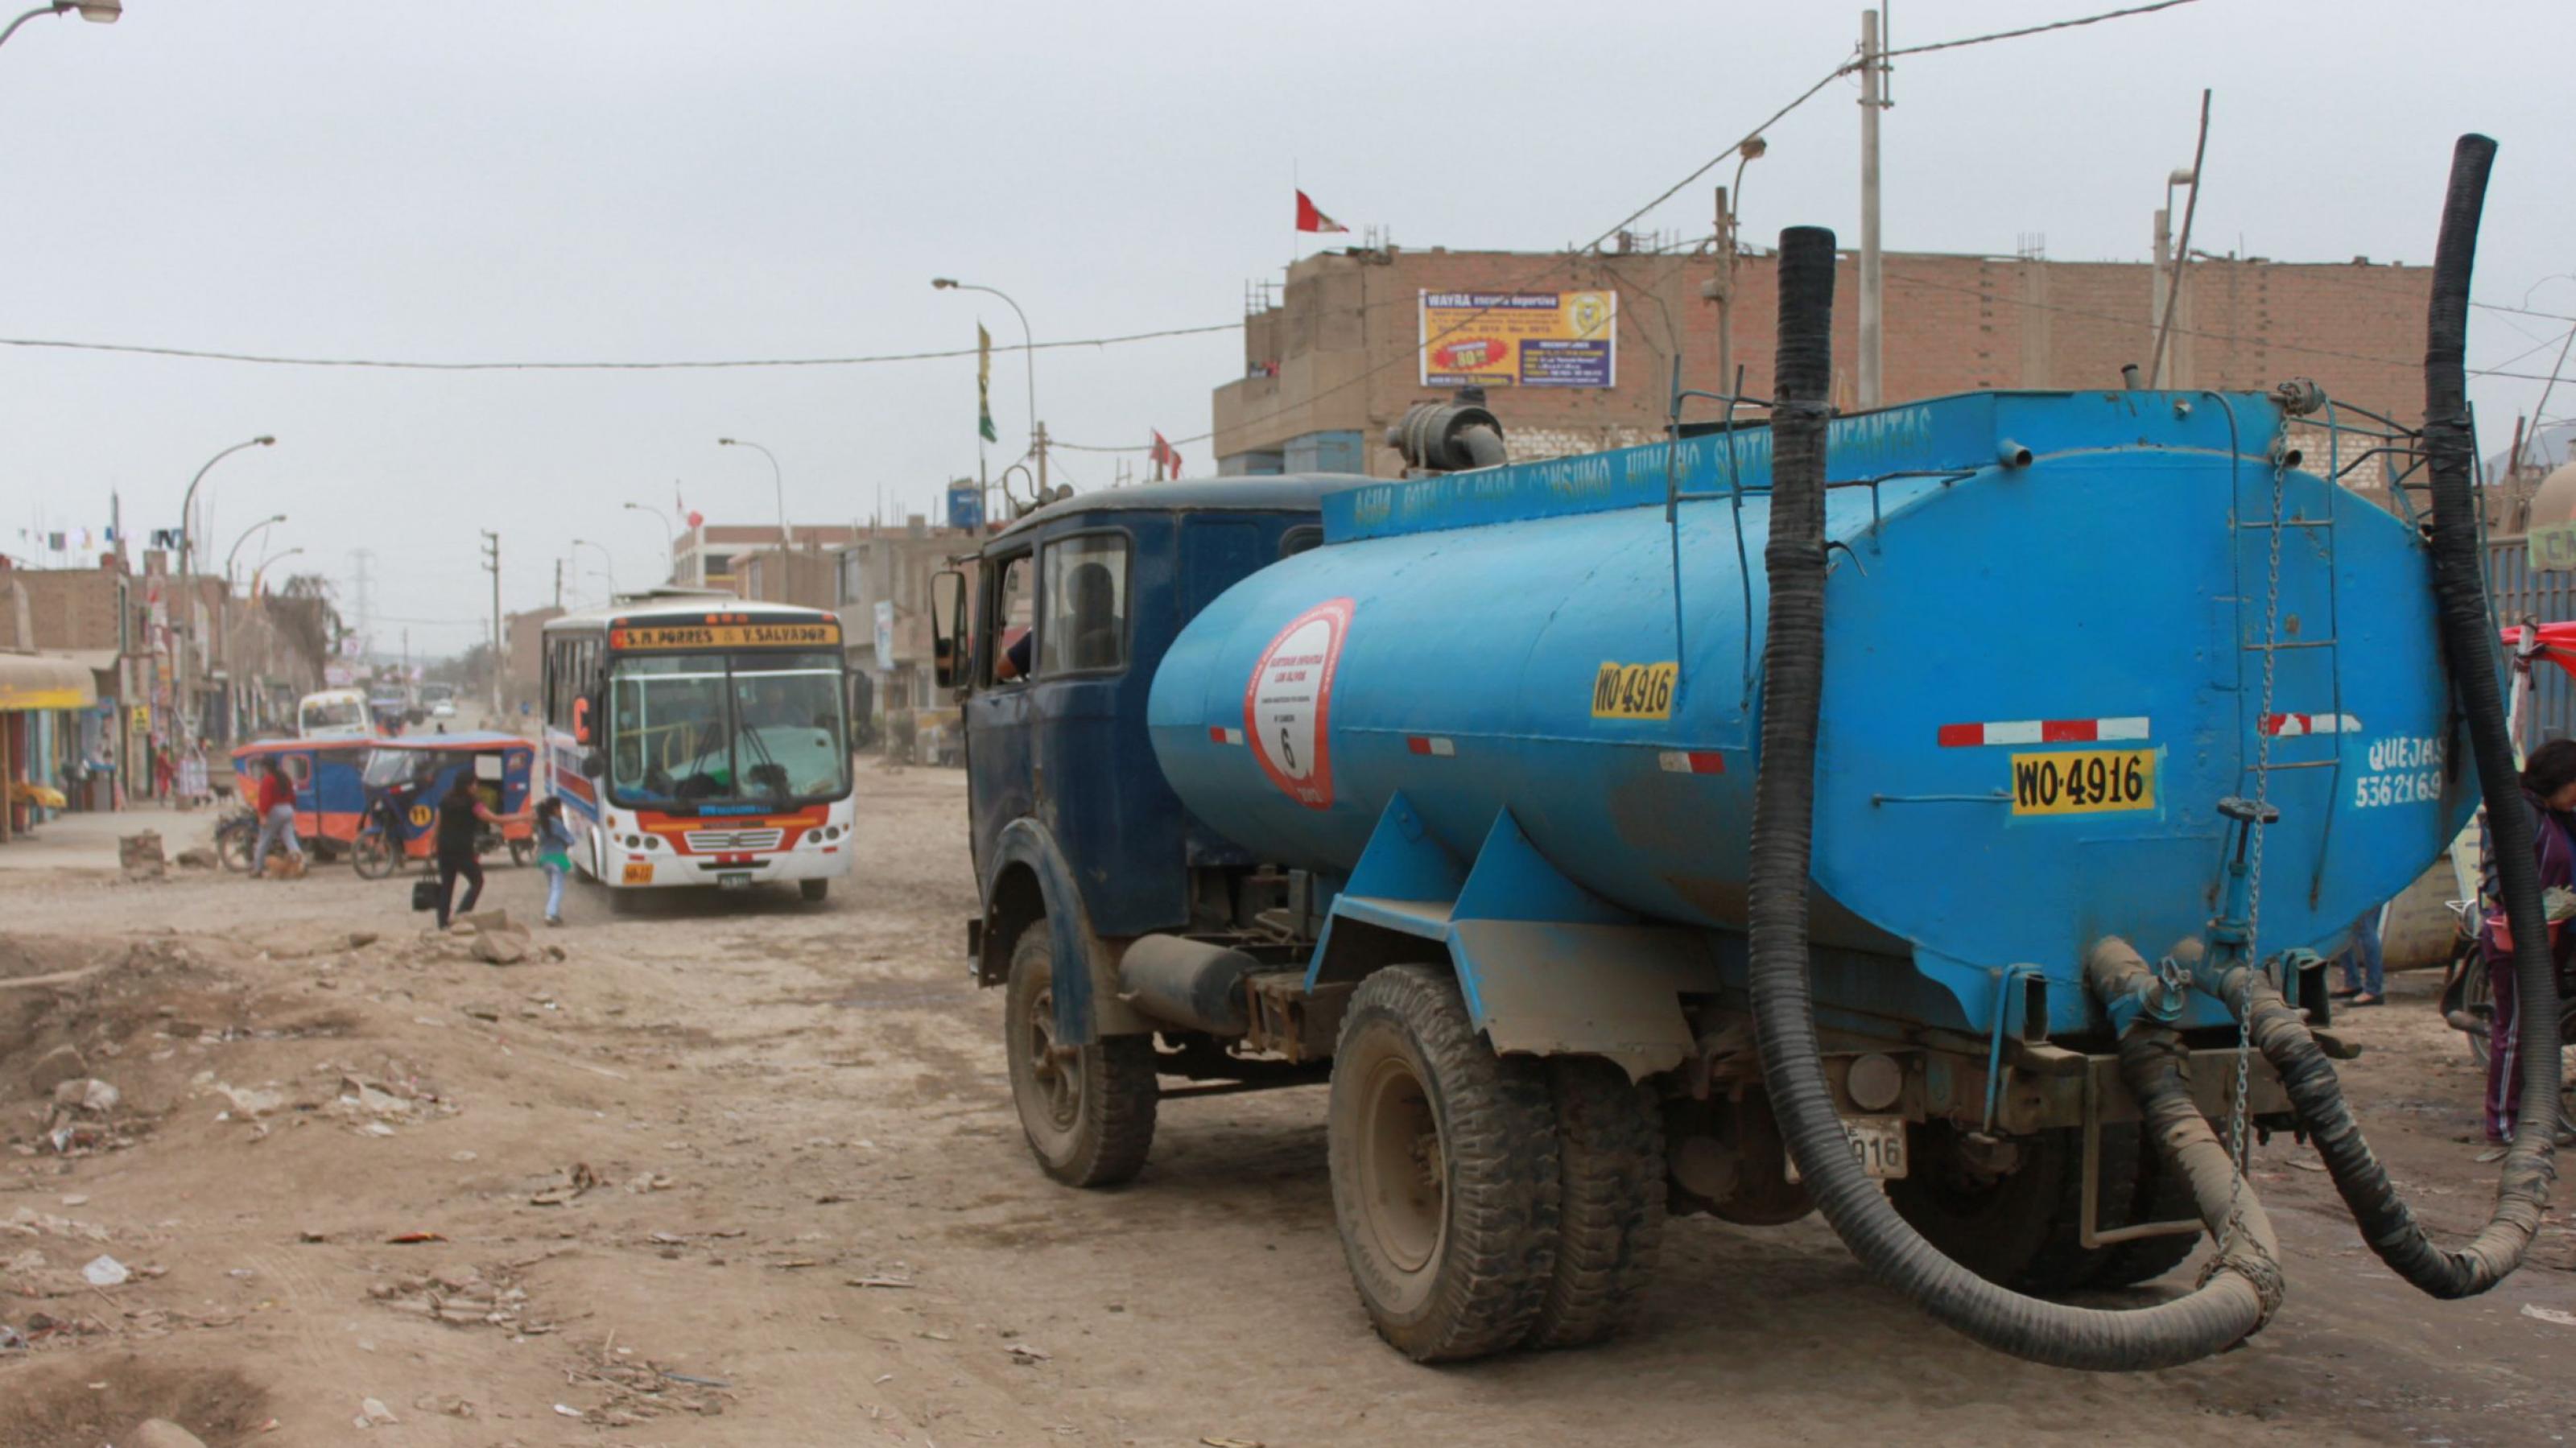 Ein blauer Tanklastwagen in einem Armenviertel, graue Erdstrasse, ein Bus, graue Häuser, kein Grün.